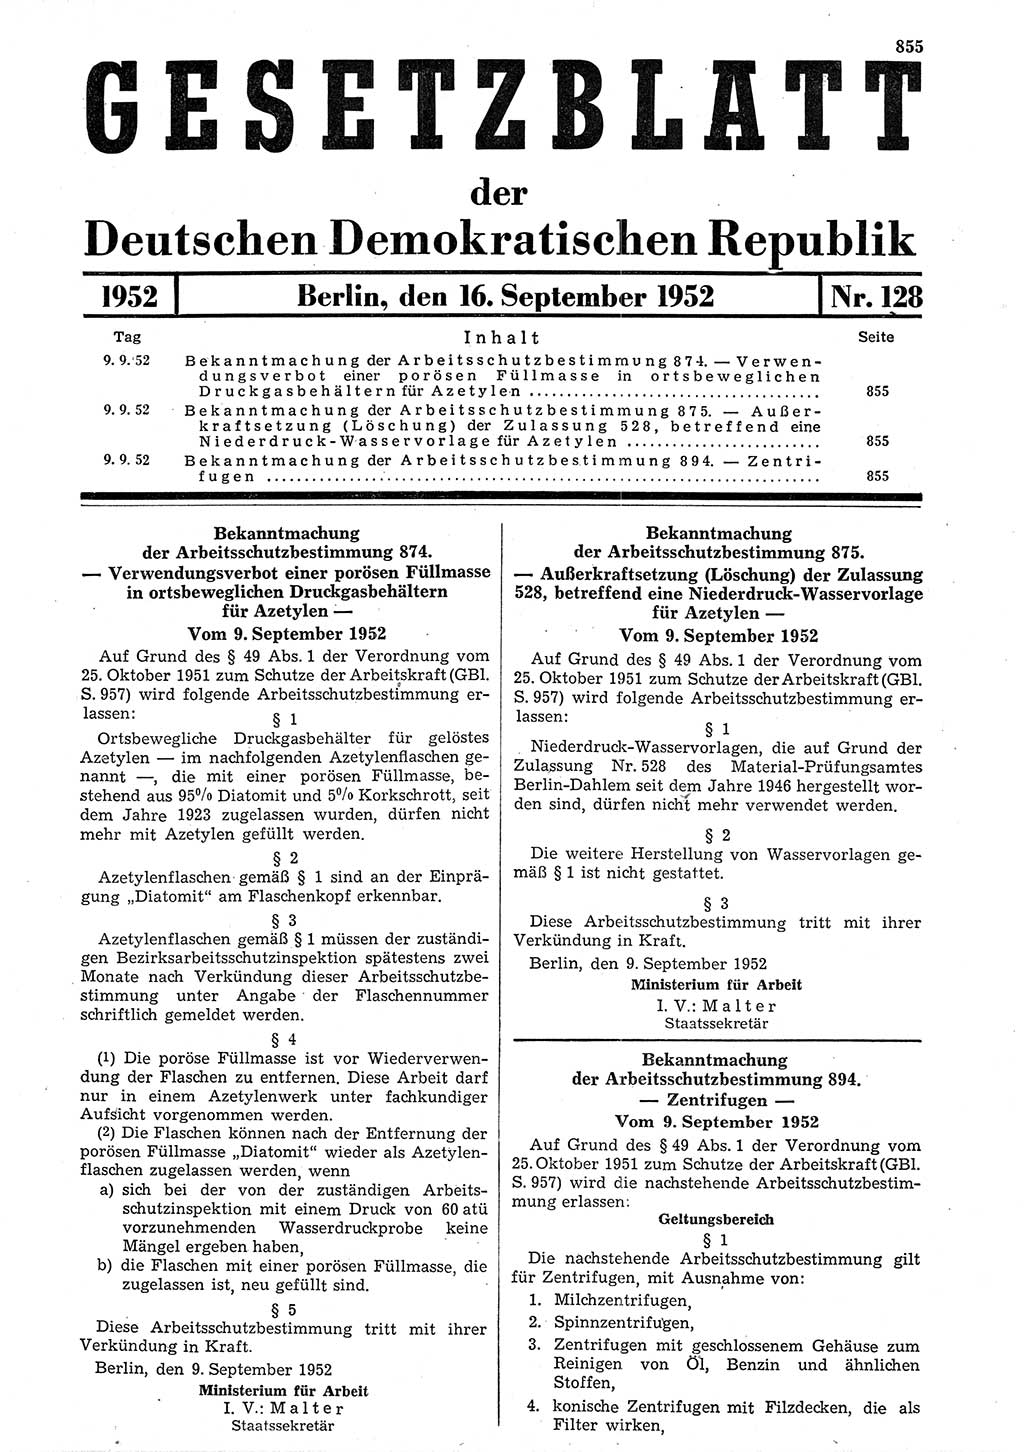 Gesetzblatt (GBl.) der Deutschen Demokratischen Republik (DDR) 1952, Seite 855 (GBl. DDR 1952, S. 855)